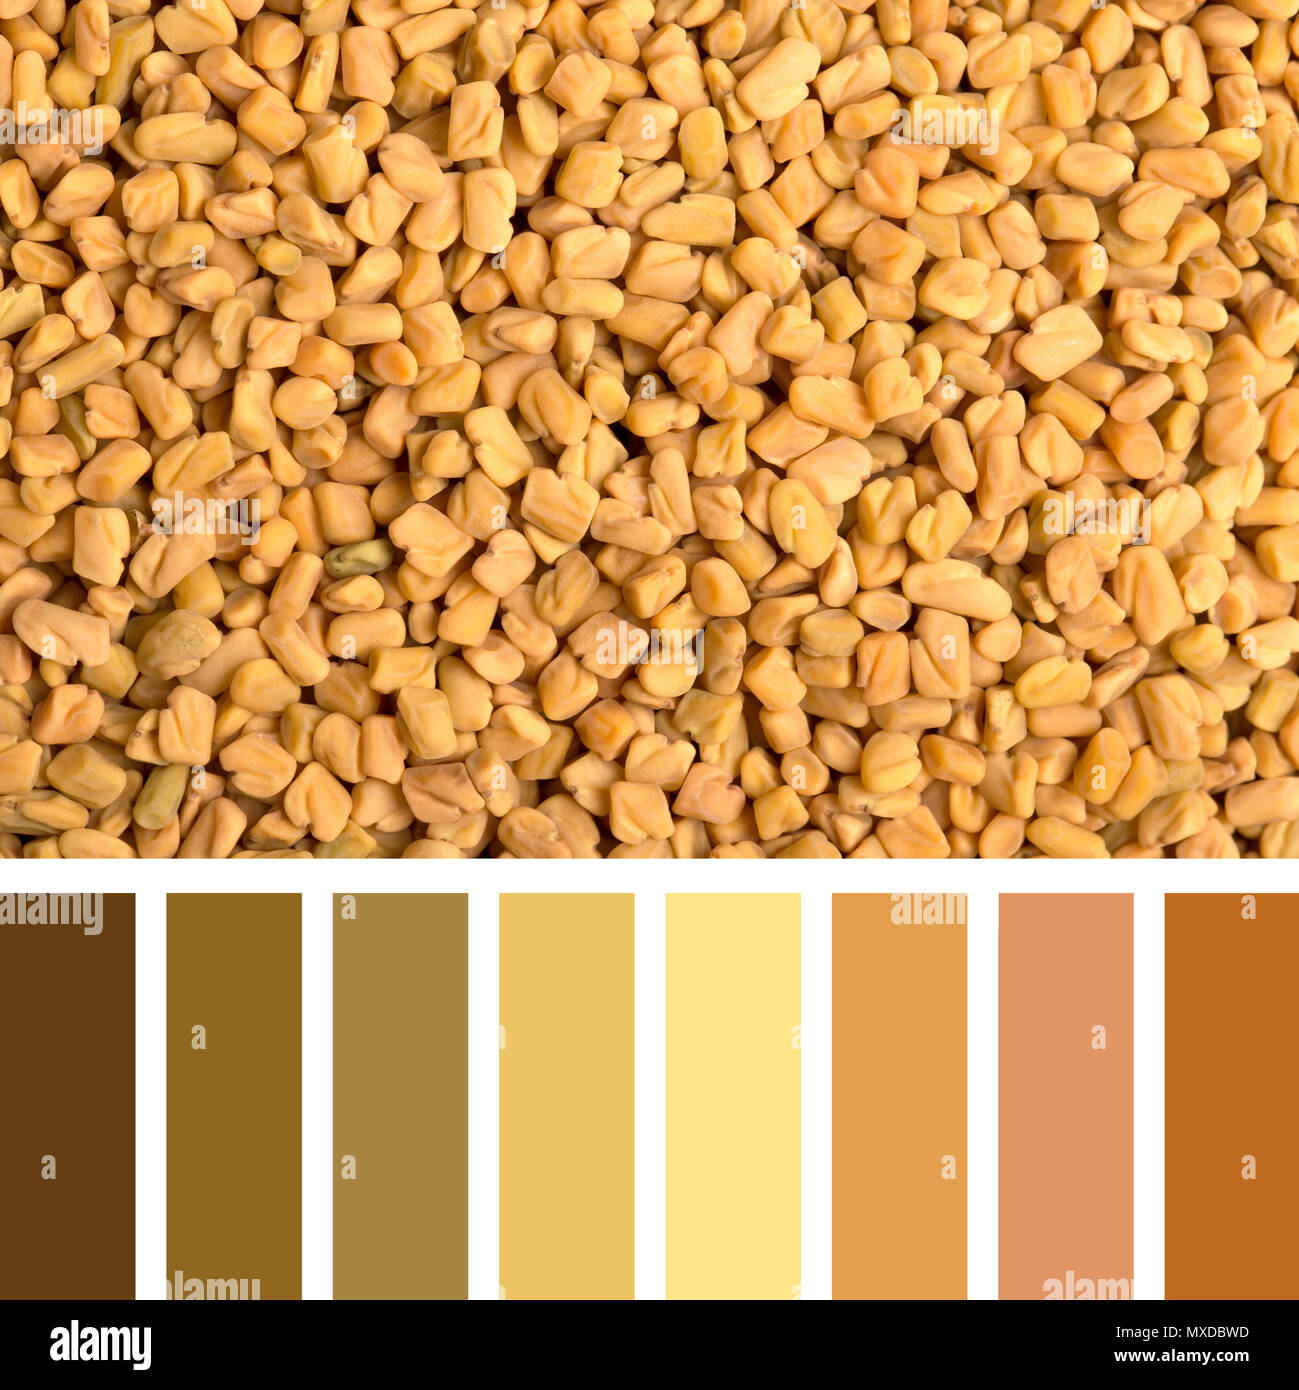 Ein Hintergrund Textur von Bockshornklee Samen in eine Farbpalette mit kostenlosen Farbmuster. Stockfoto